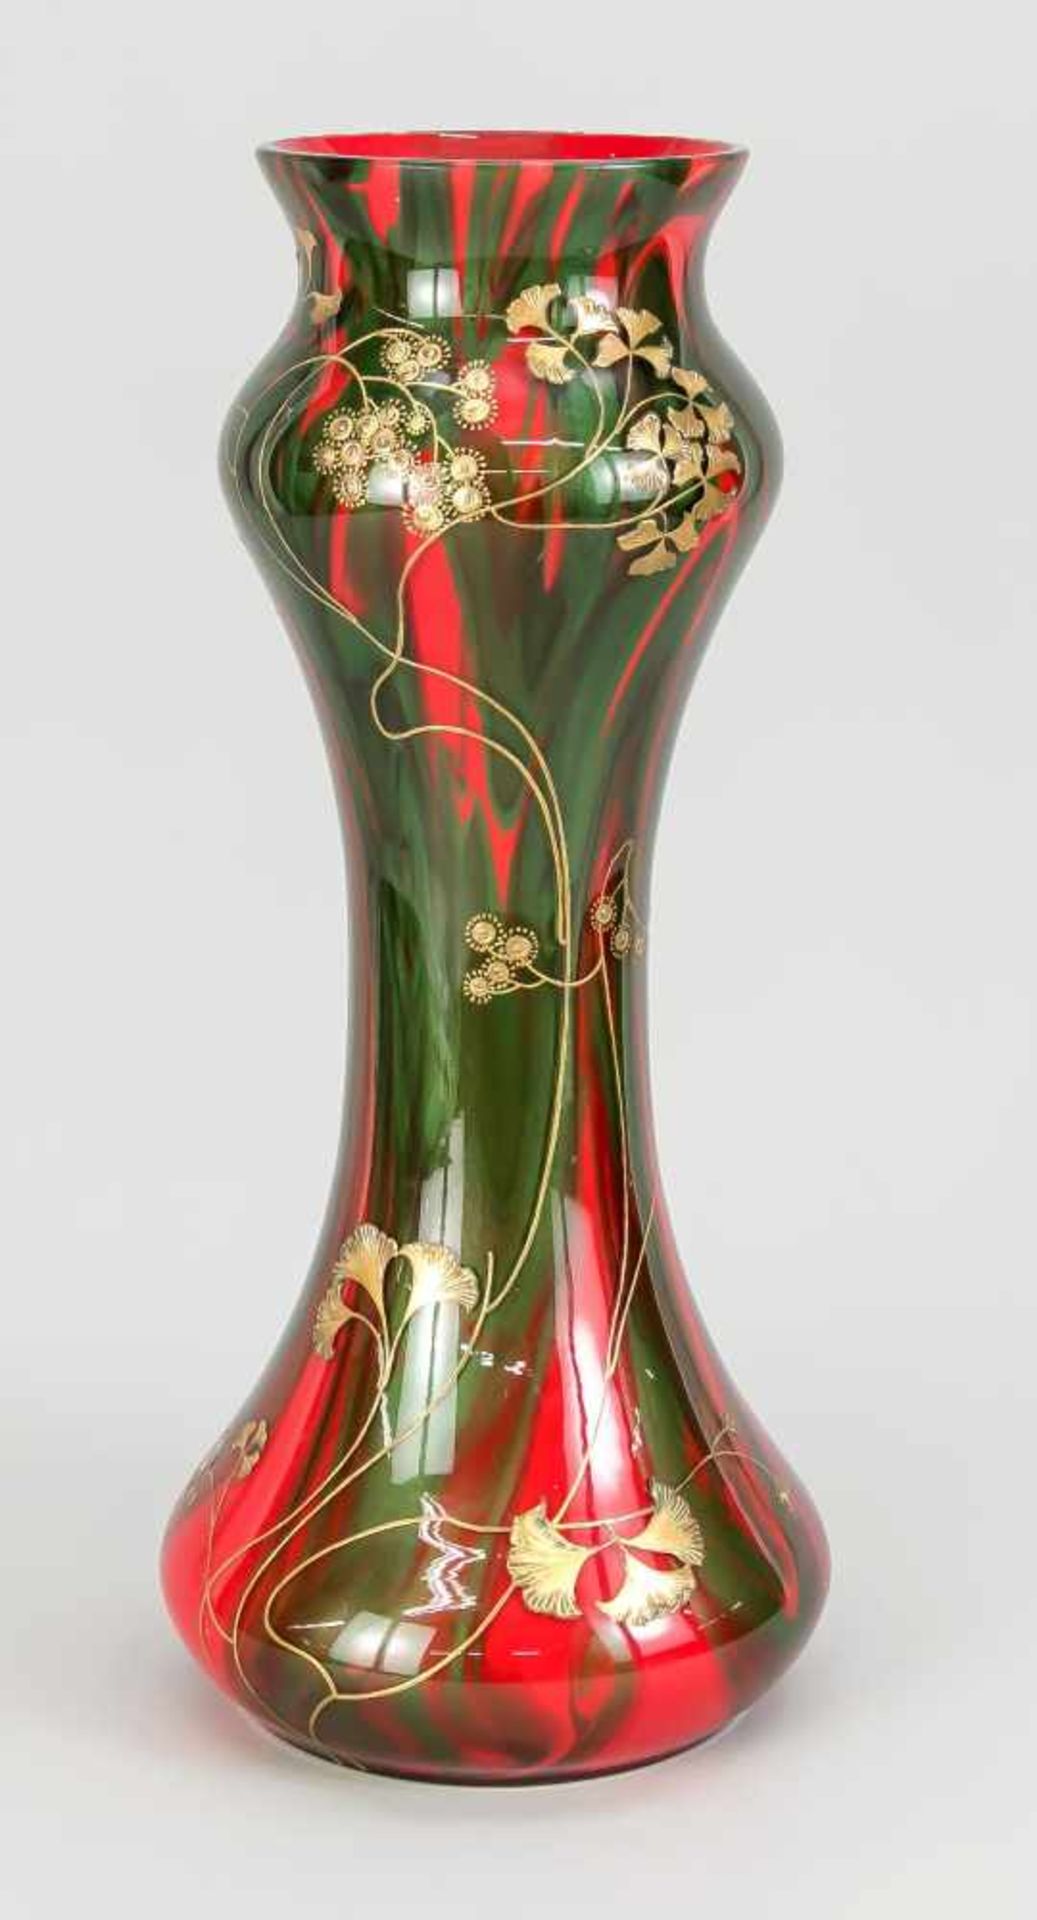 Große Vase in der Art des Jugendstils, 20. Jh., runder Stand, geschweifter Korpus, klaresGlas mit